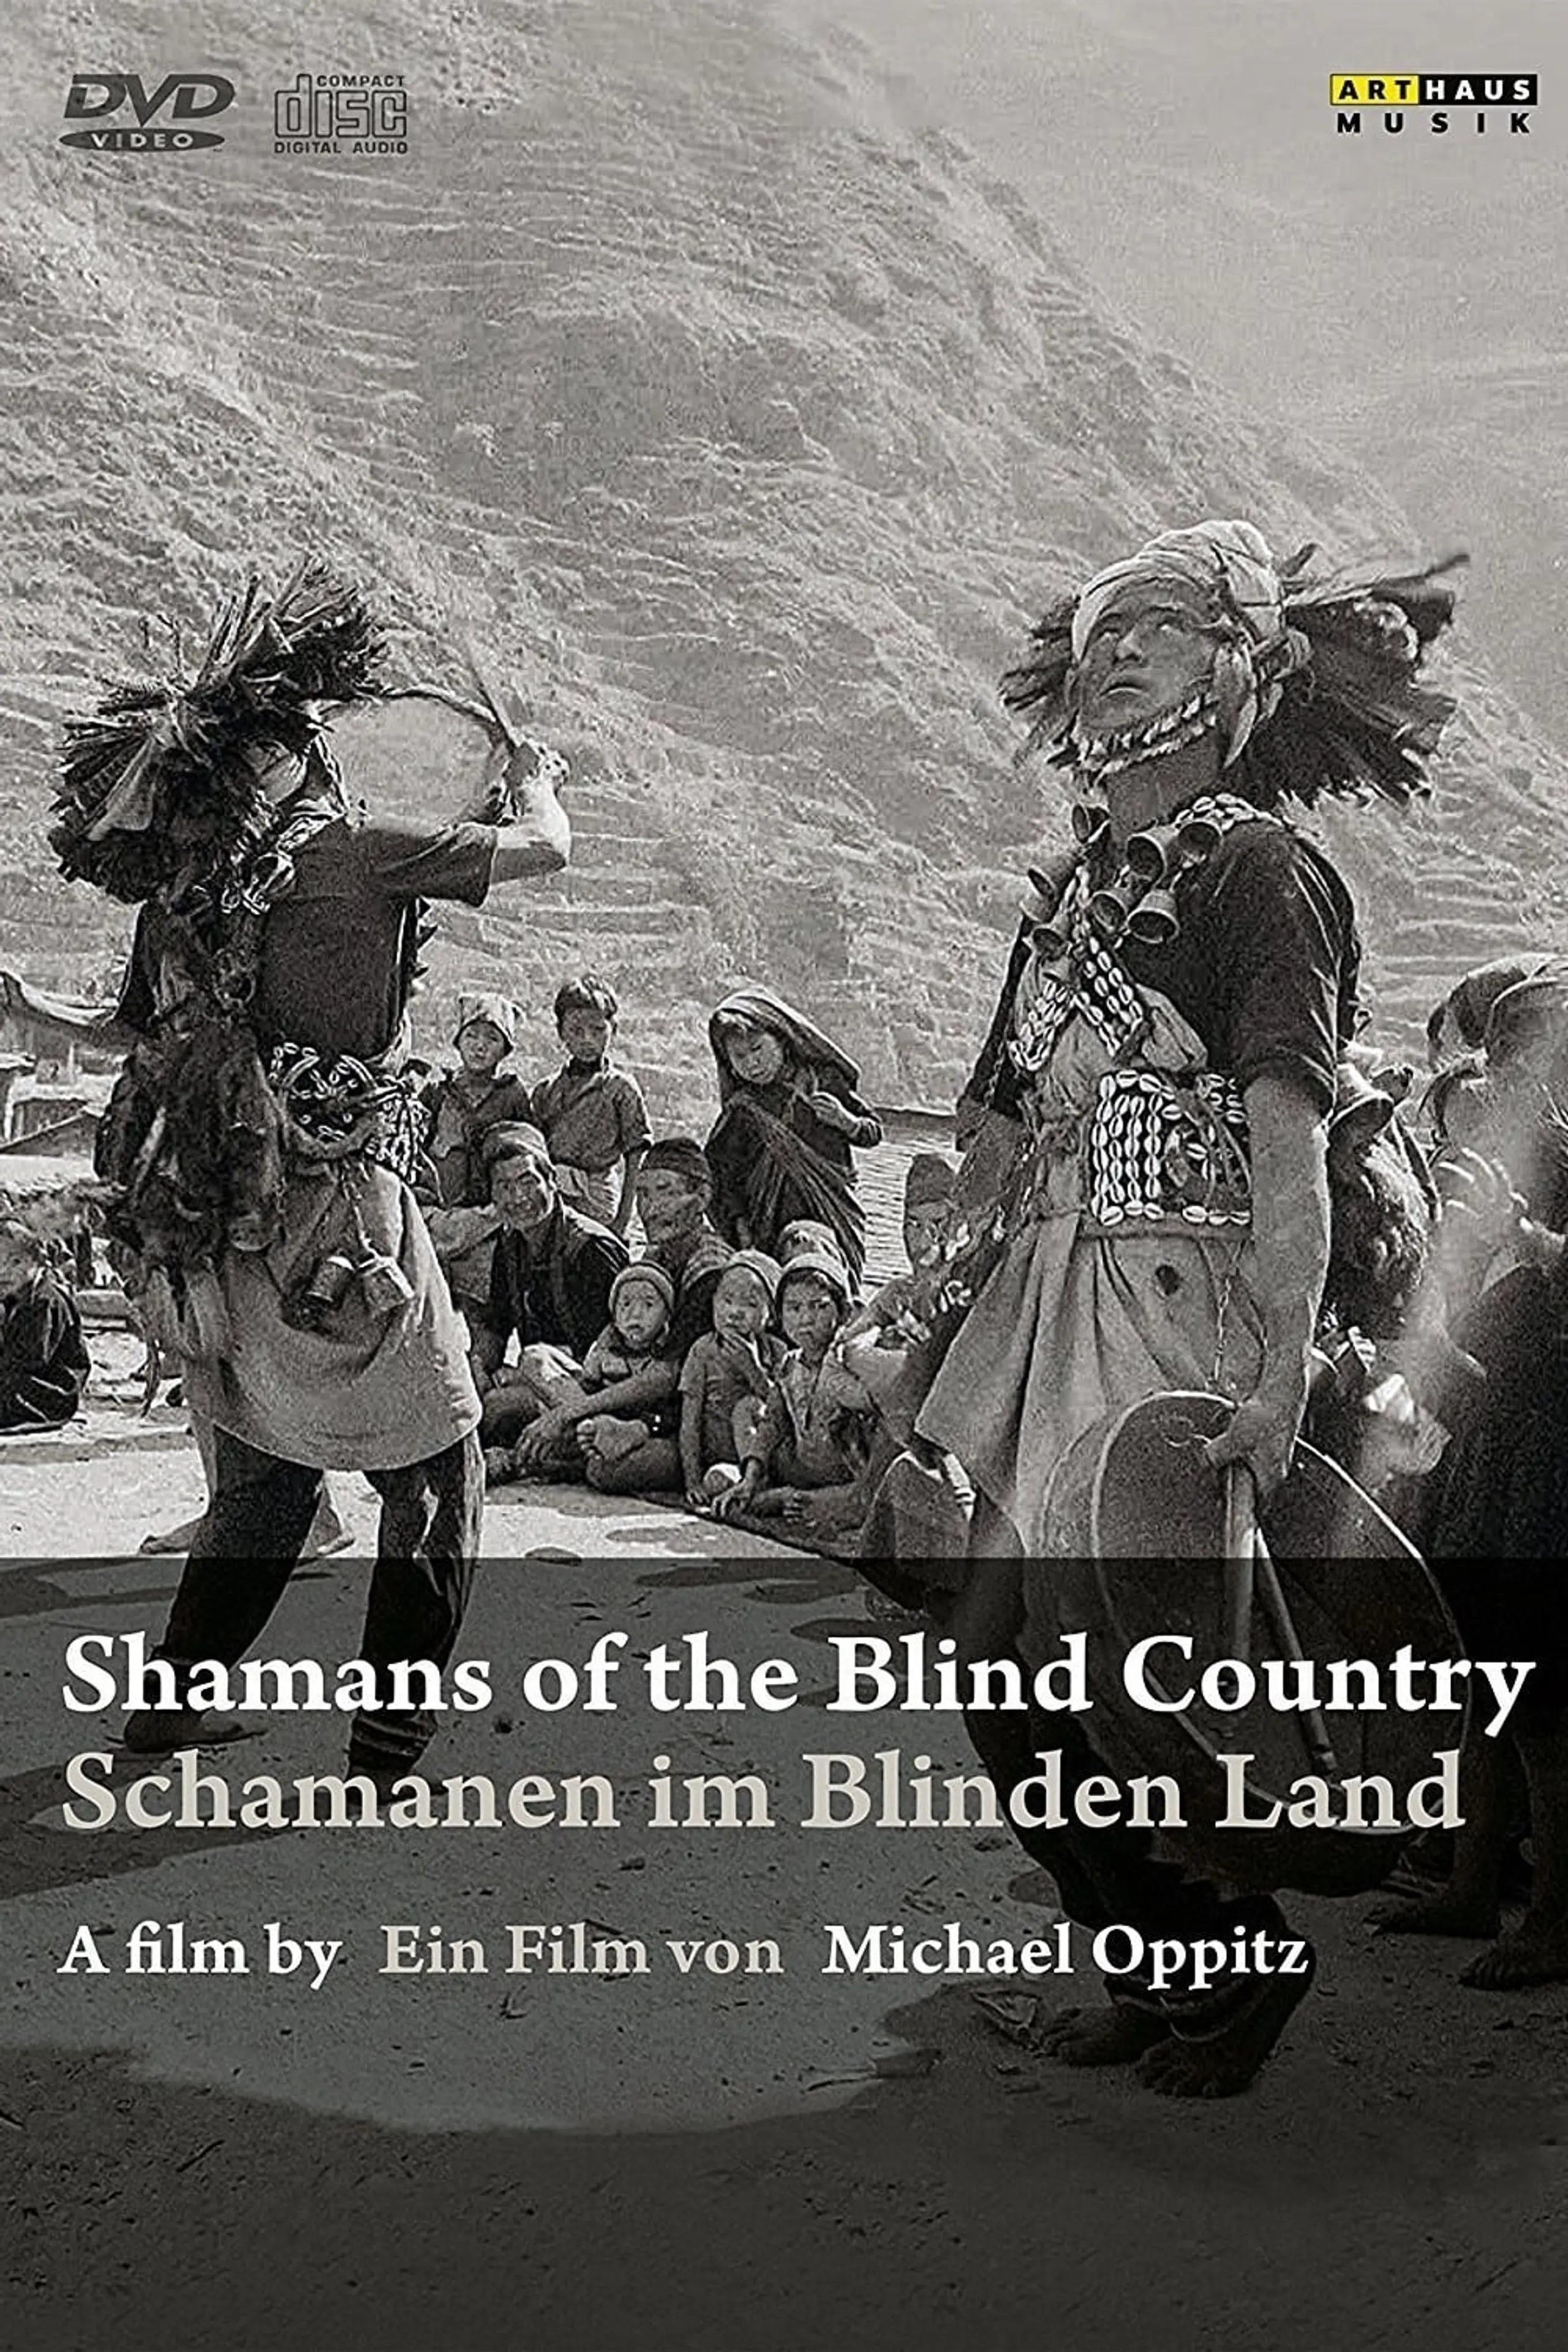 Schamanen im Blinden Land